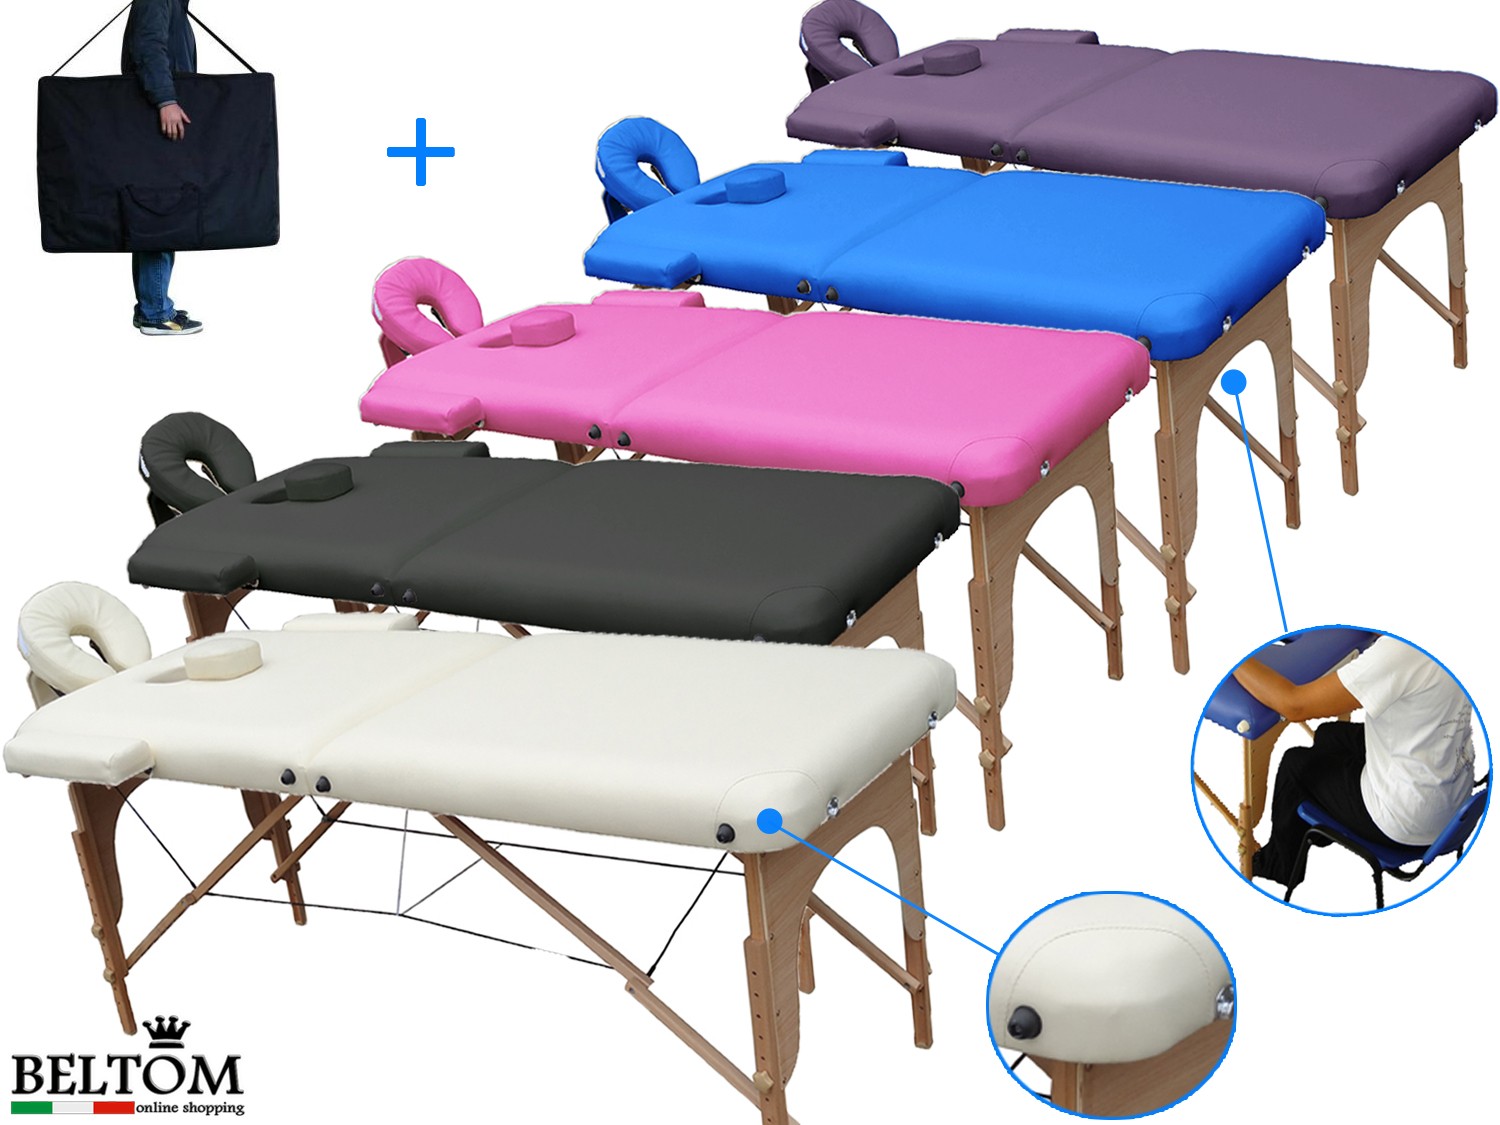 Table de massage pliante 2 zones en bois avec panneau reiki +